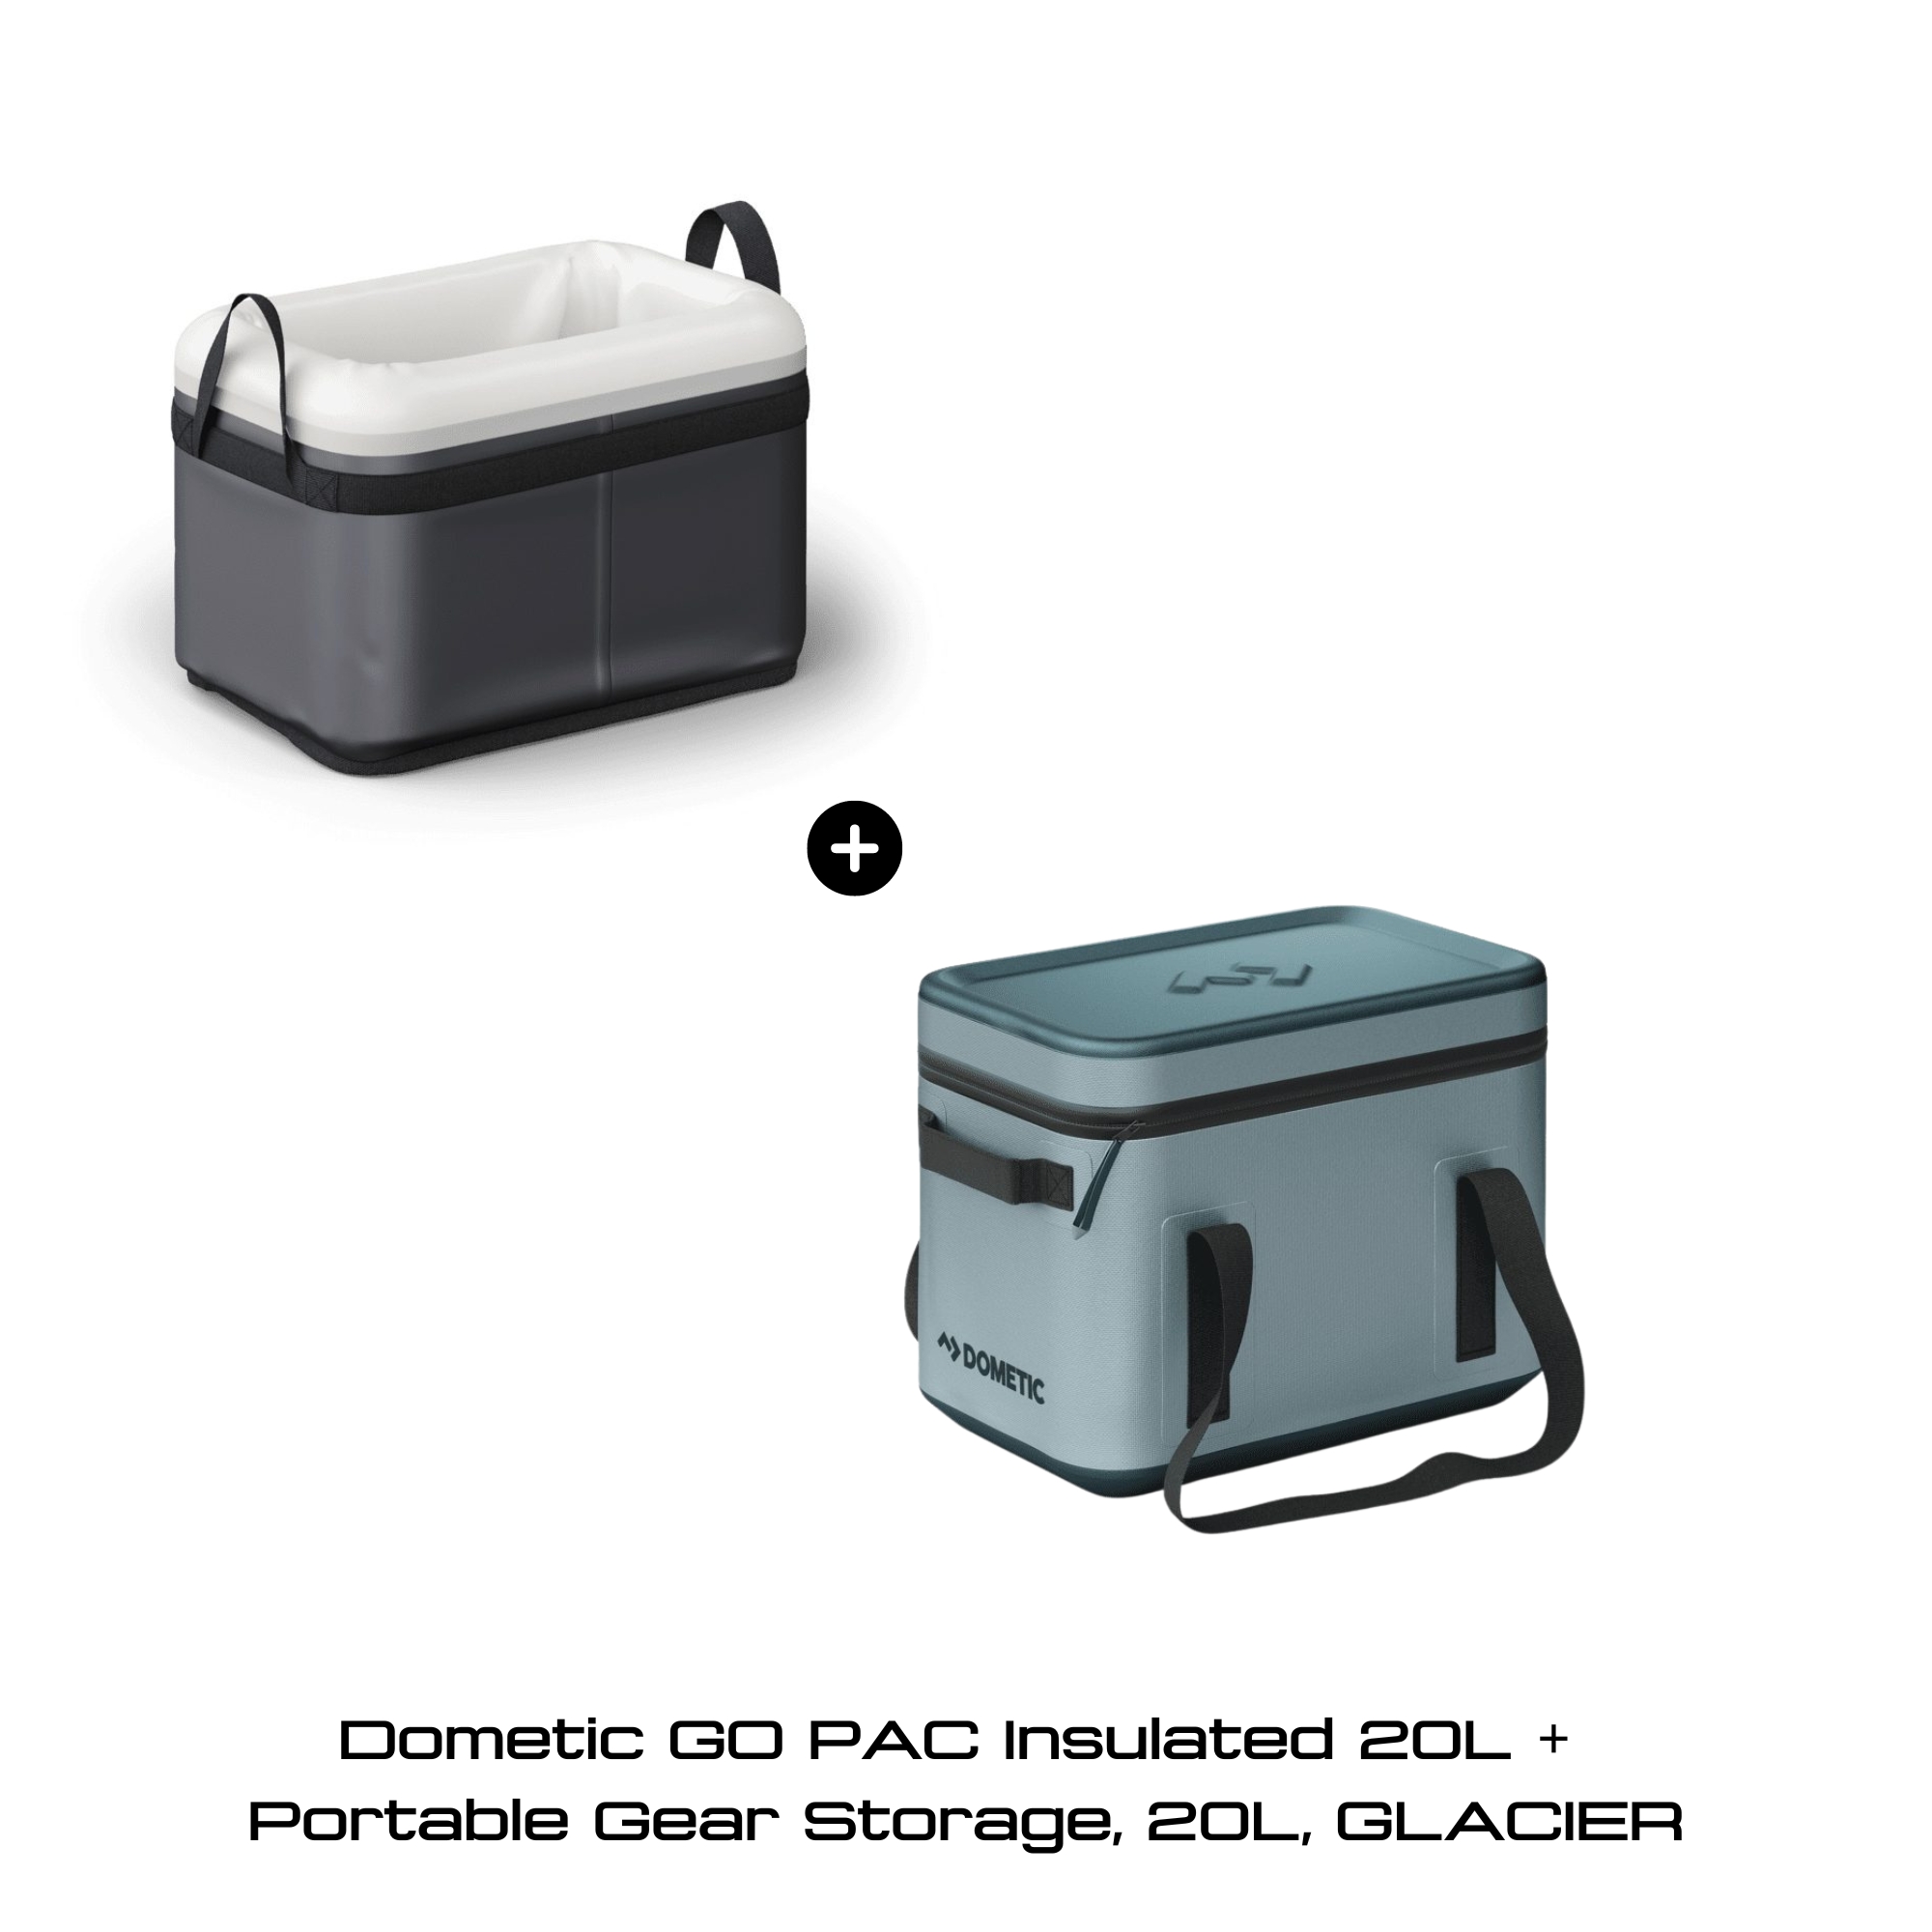 Dometic GO PAC Insulated 20L +  Portable Gear Storage, 20L, GLACIER